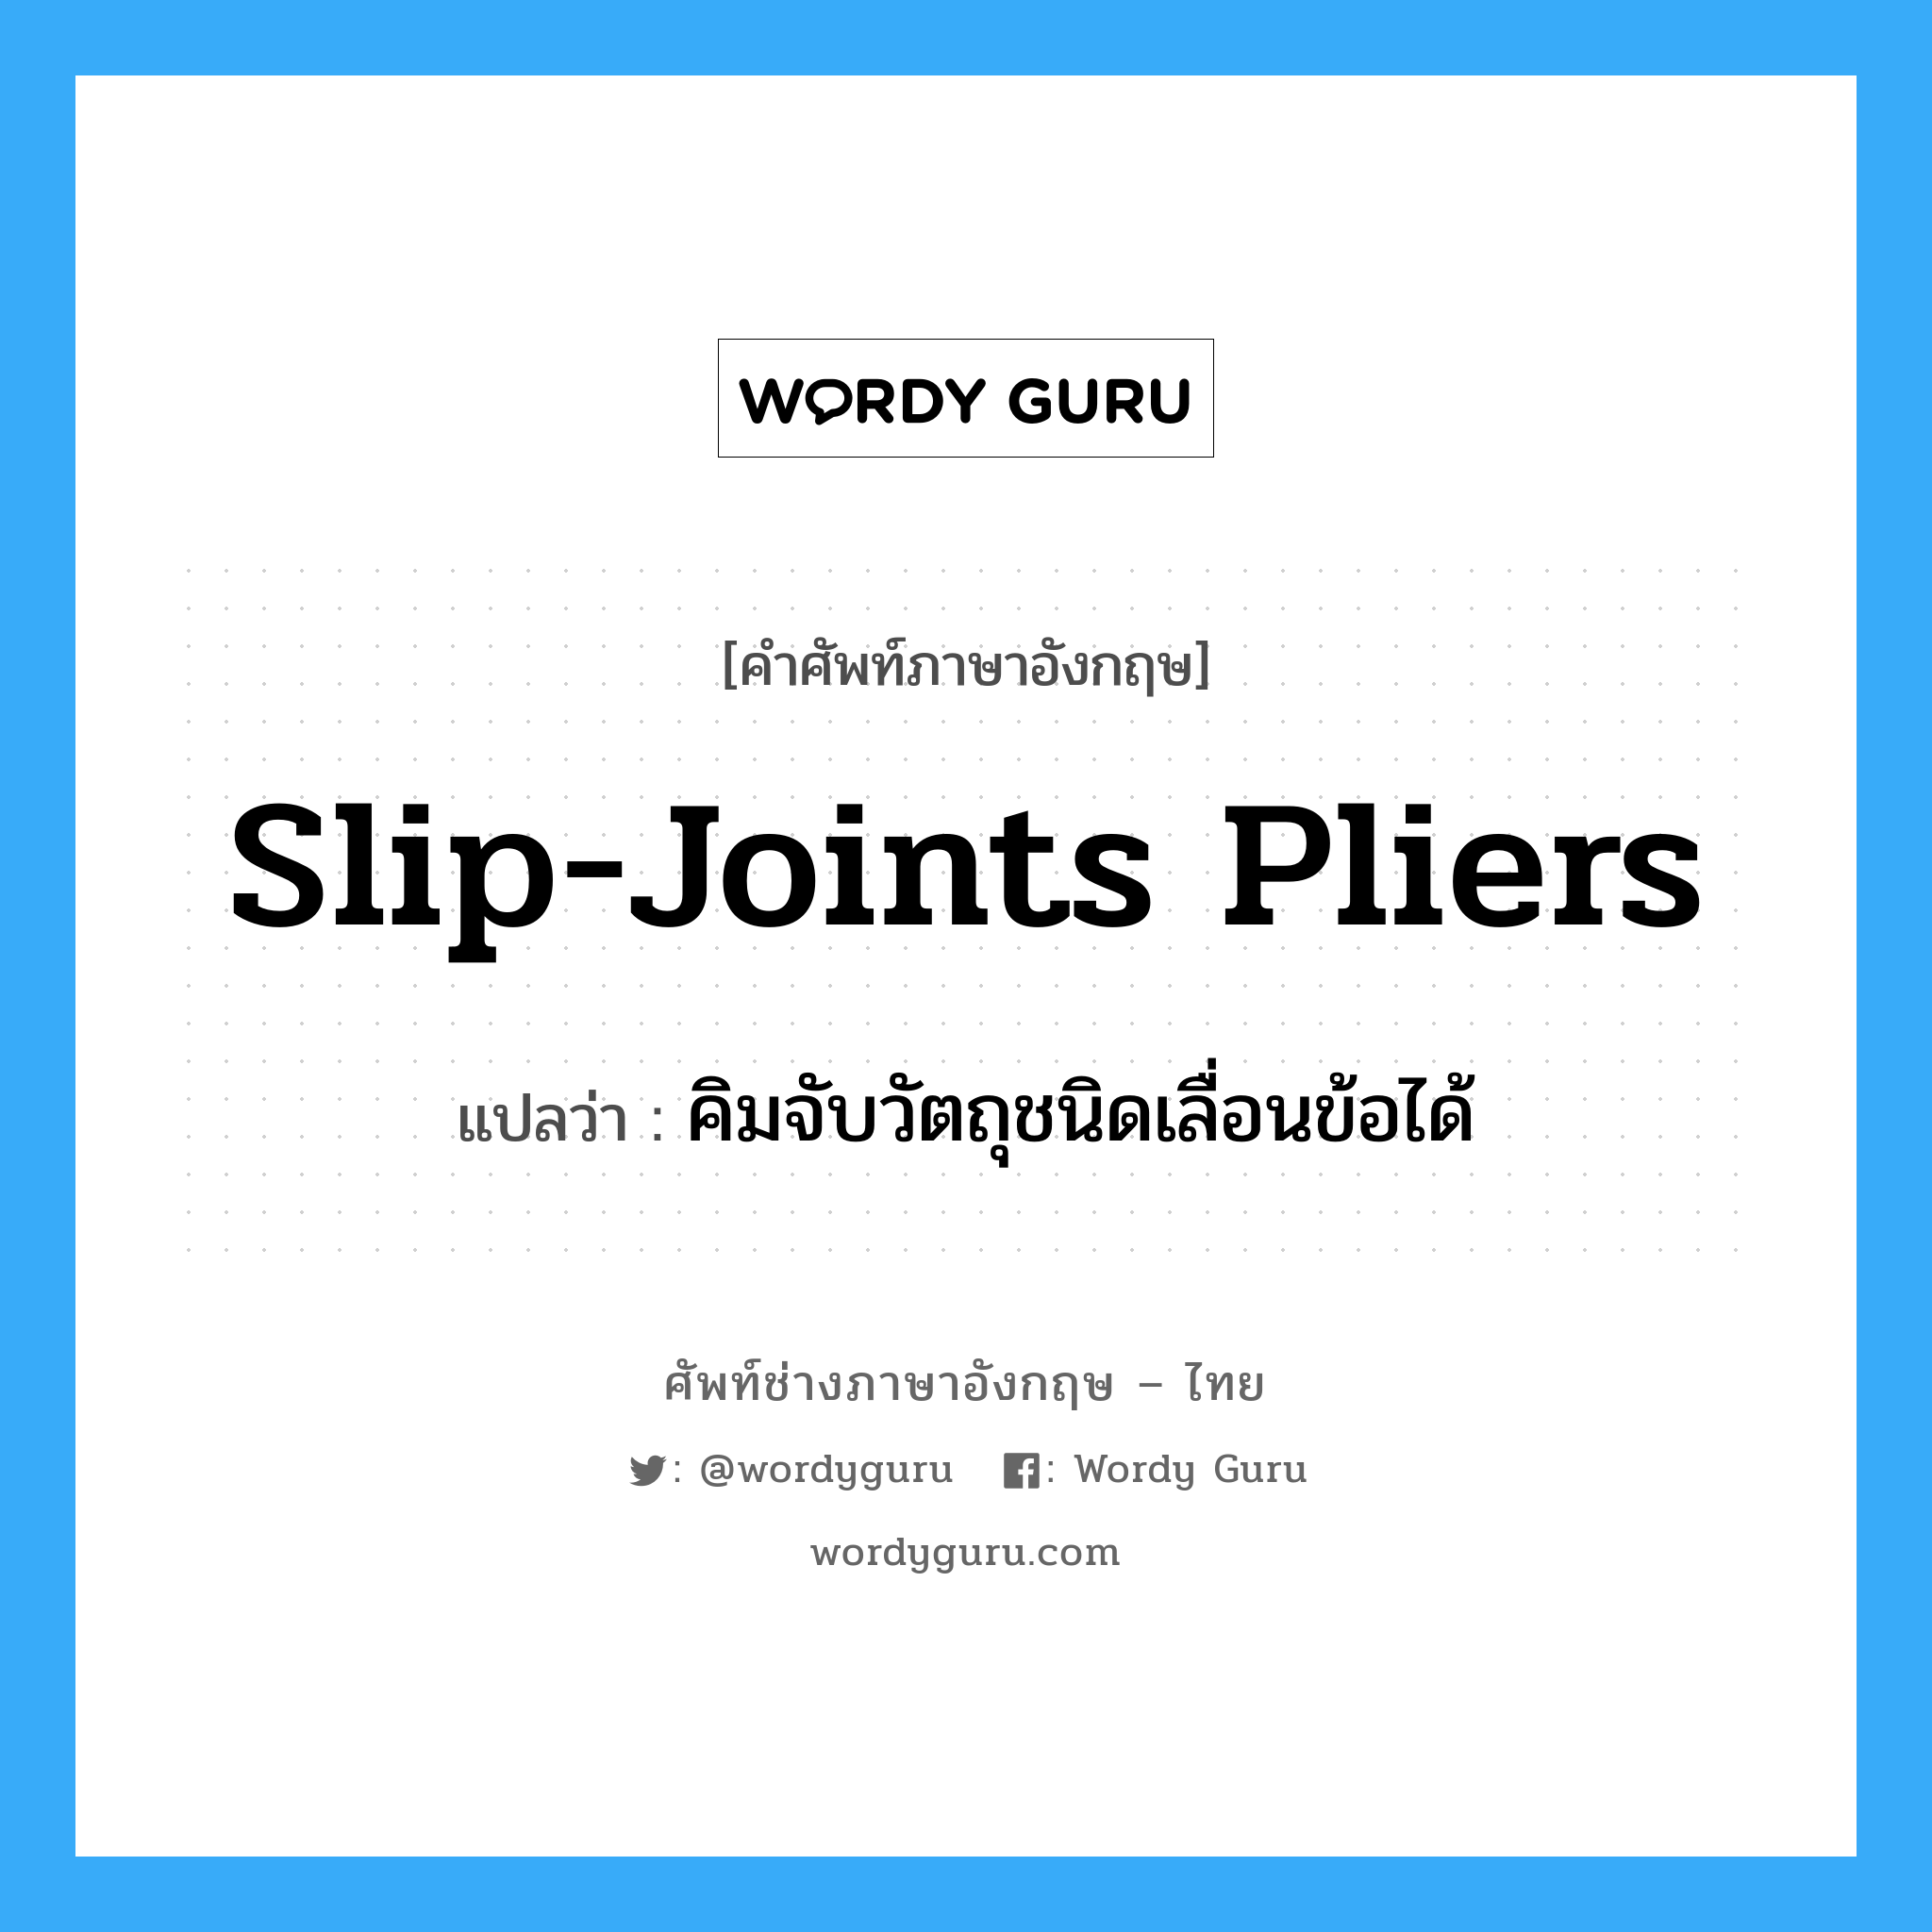 slip-joints pliers แปลว่า?, คำศัพท์ช่างภาษาอังกฤษ - ไทย slip-joints pliers คำศัพท์ภาษาอังกฤษ slip-joints pliers แปลว่า คิมจับวัตถุชนิดเลื่อนข้อได้